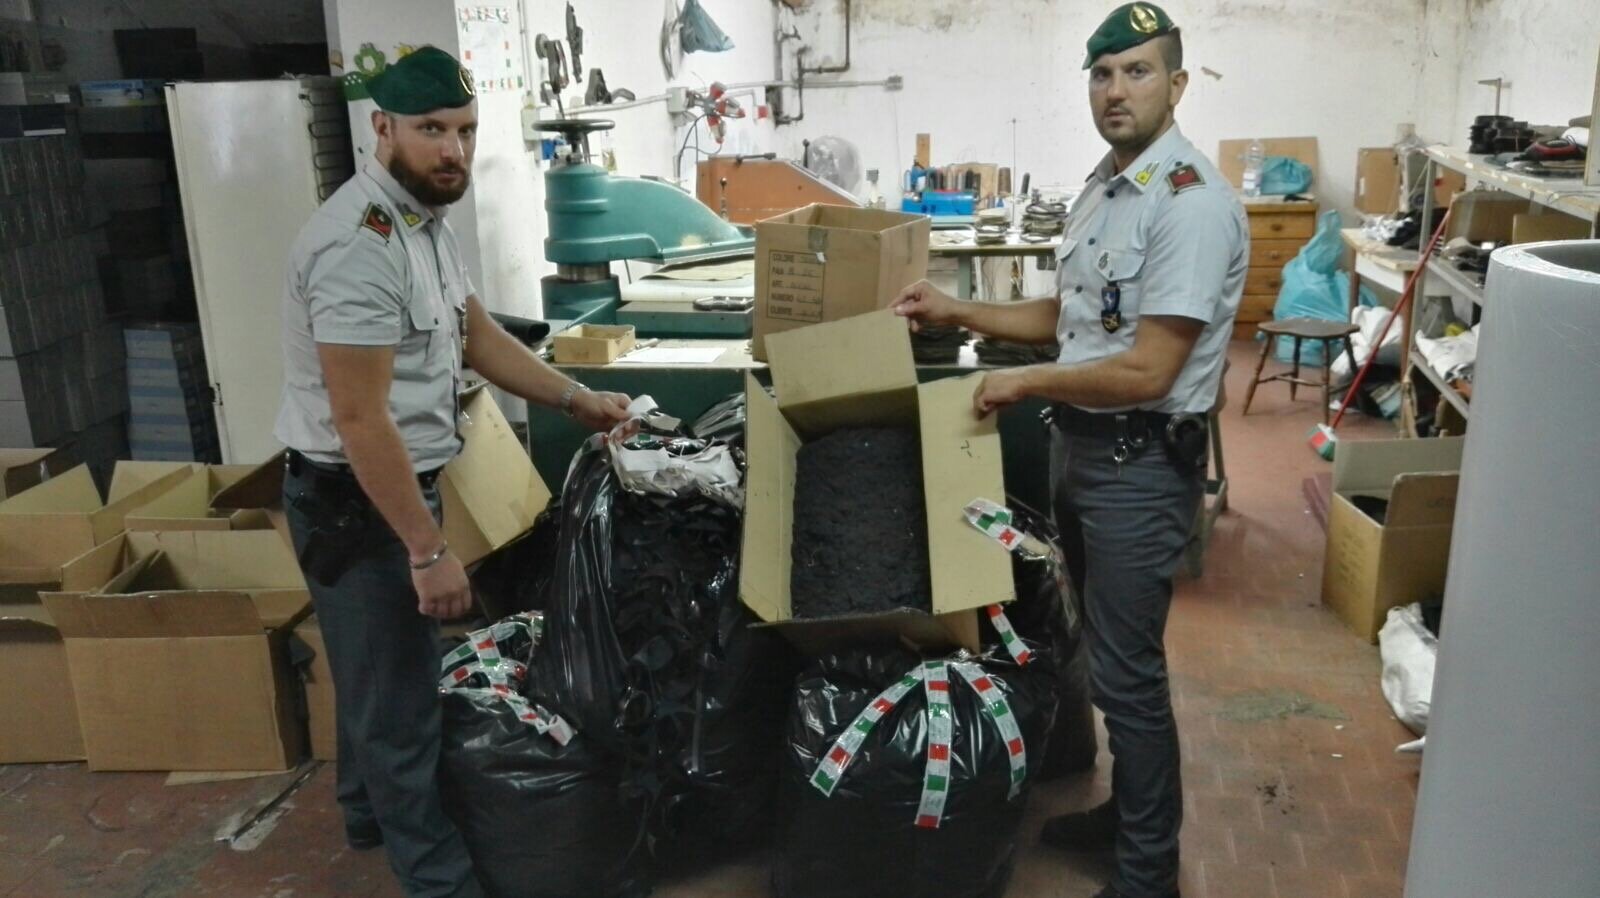 Fabbrica illegale di calzature scoperta nel Casertano.IL VIDEO